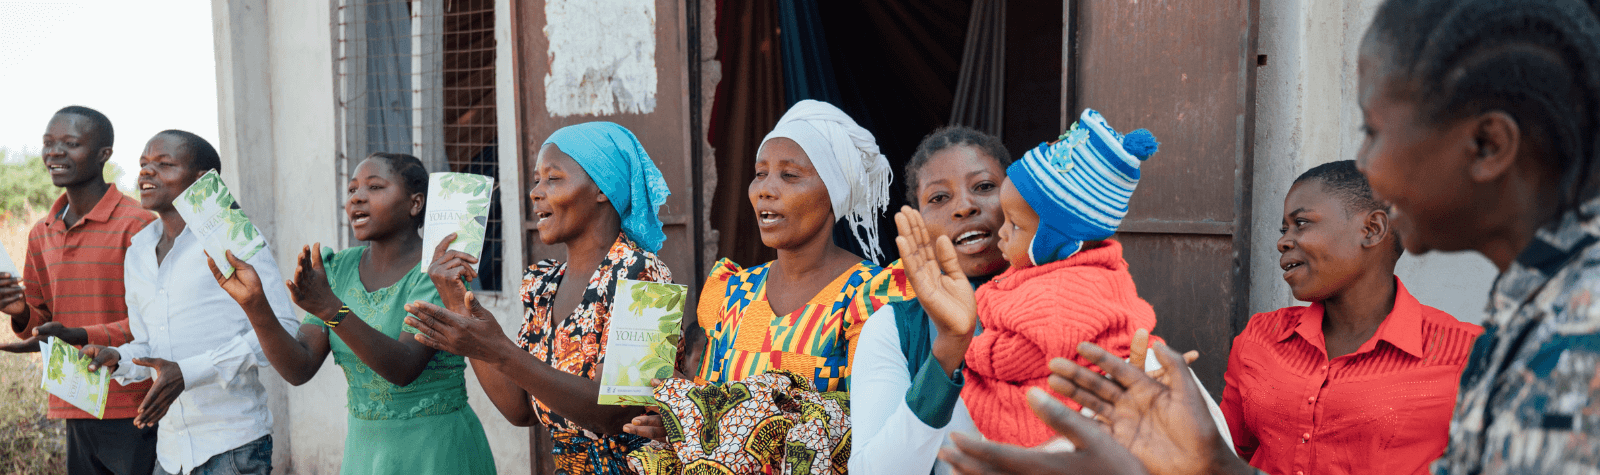 Samen het Evangelie verspreiden onder 180.000 mensen in Tanzania